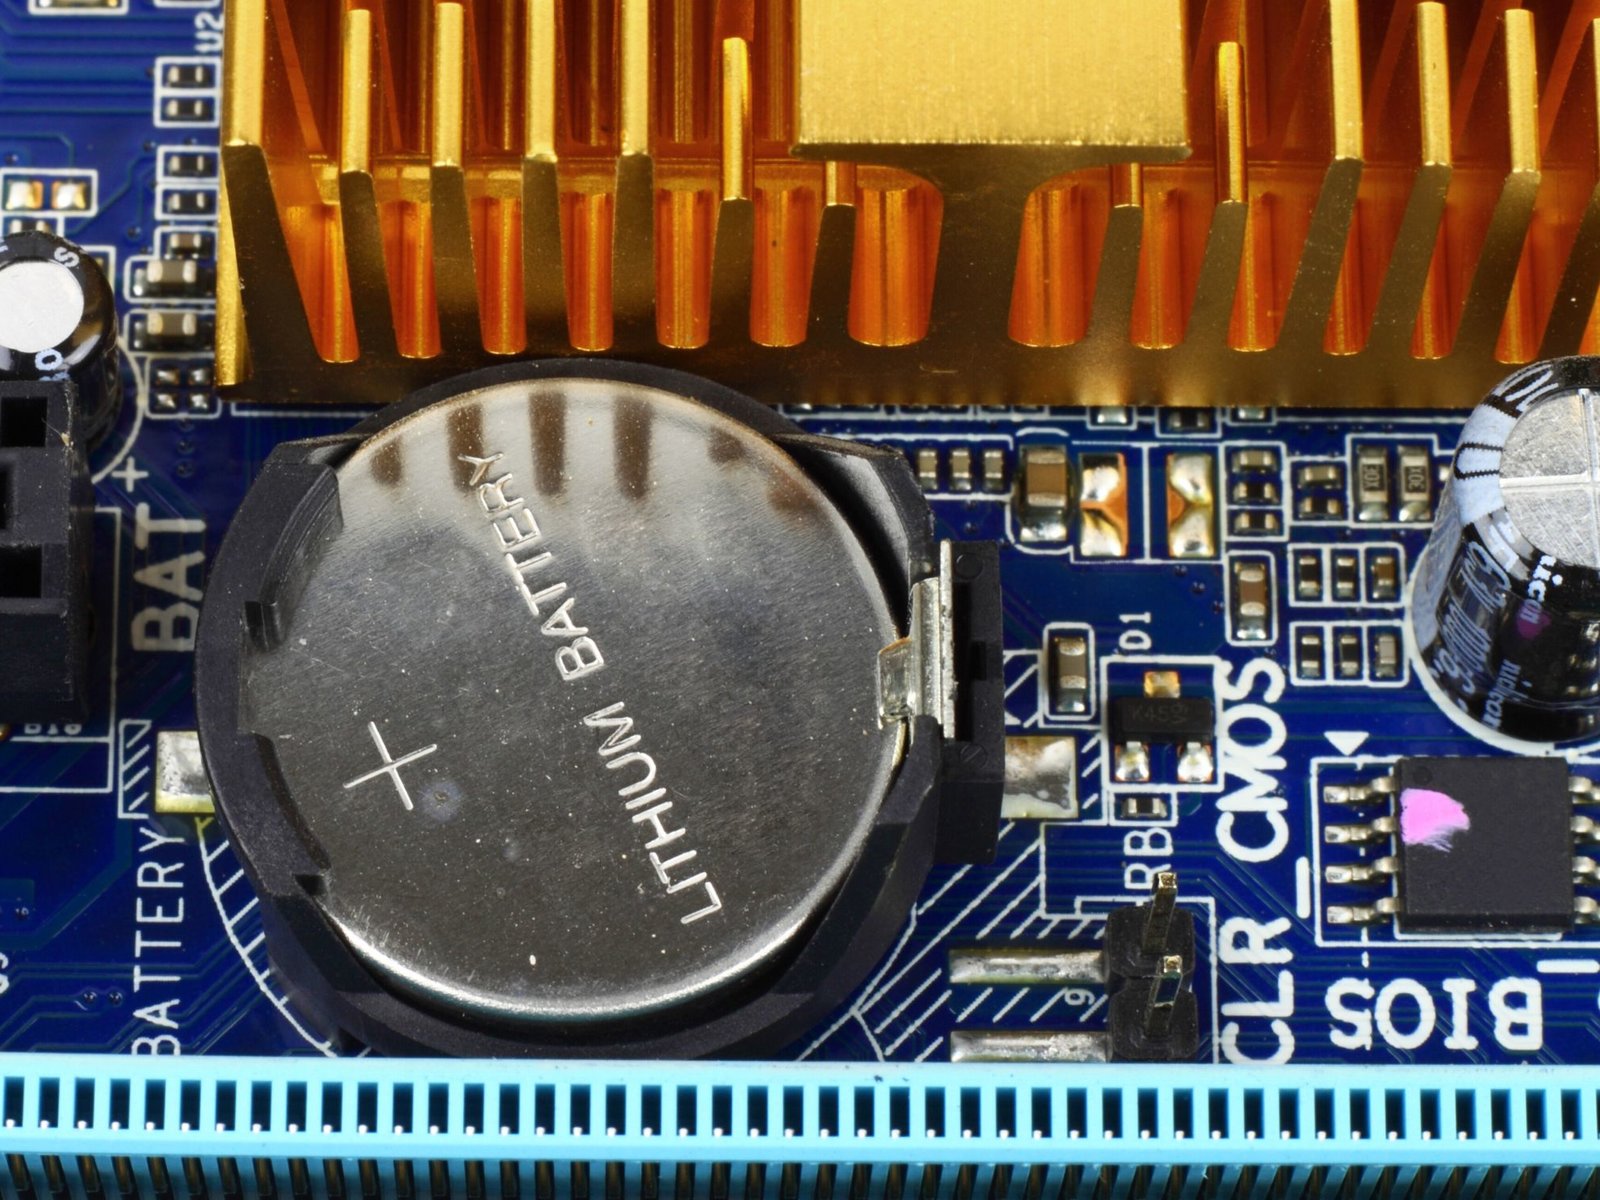 Überprüfung der Treiber für Grafikkarte und Bildschirm
Prüfung des BIOS und der CMOS-Batterie